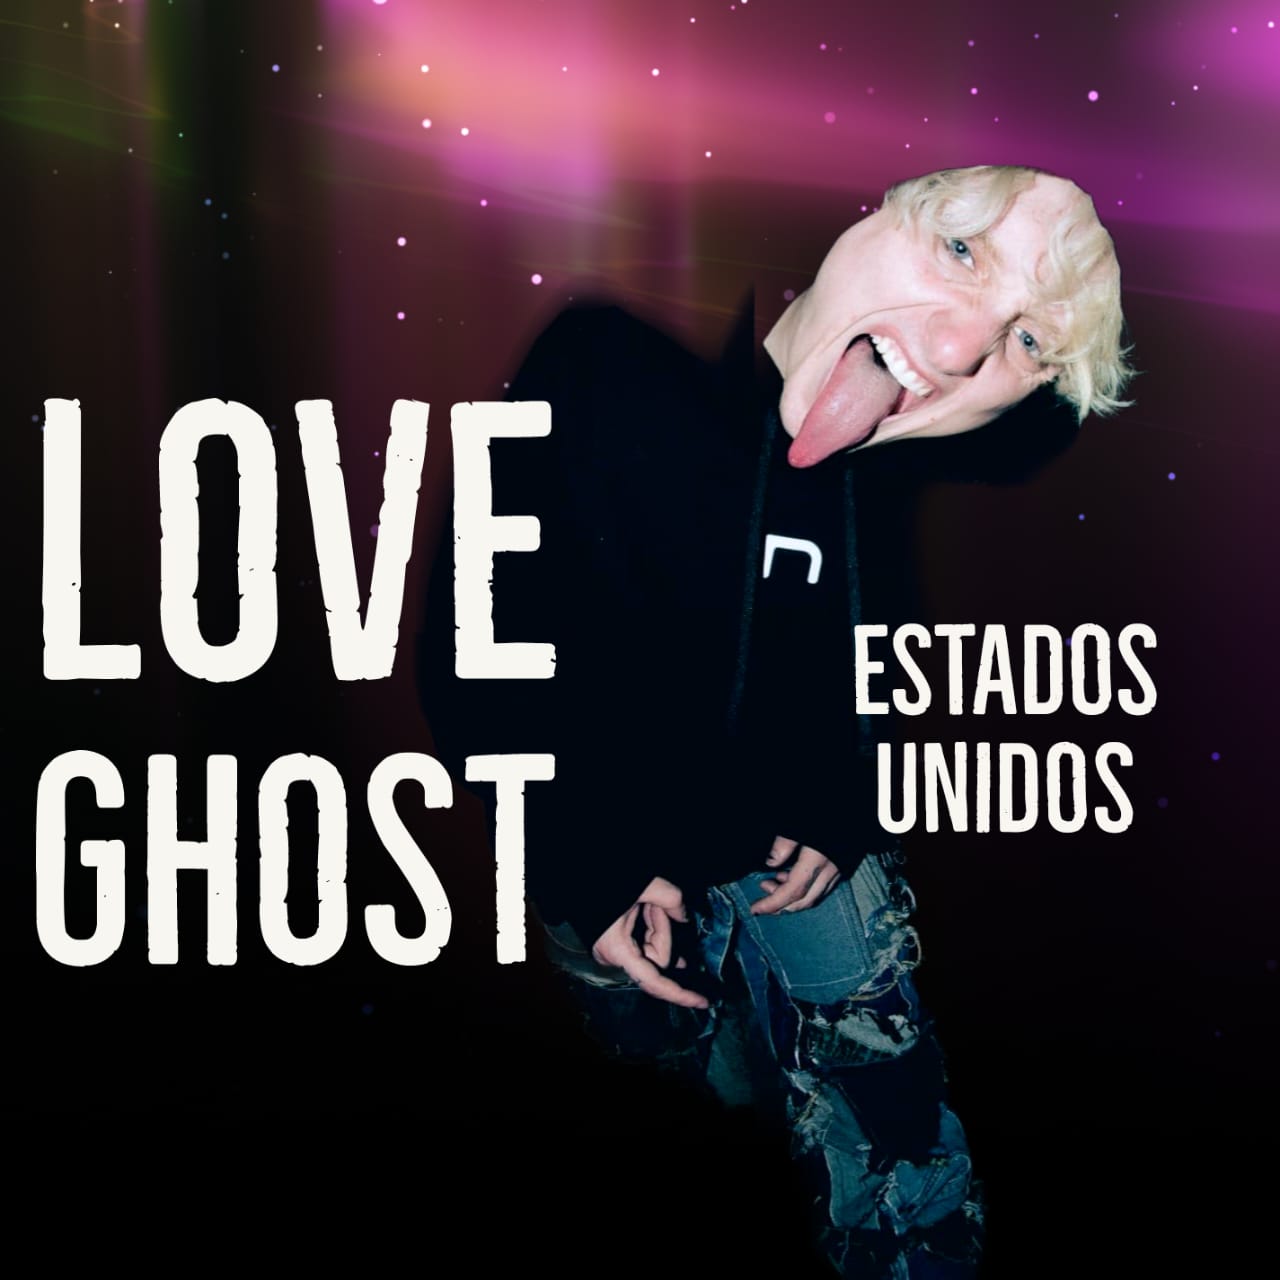 Love Ghost Nota Rockear.Co